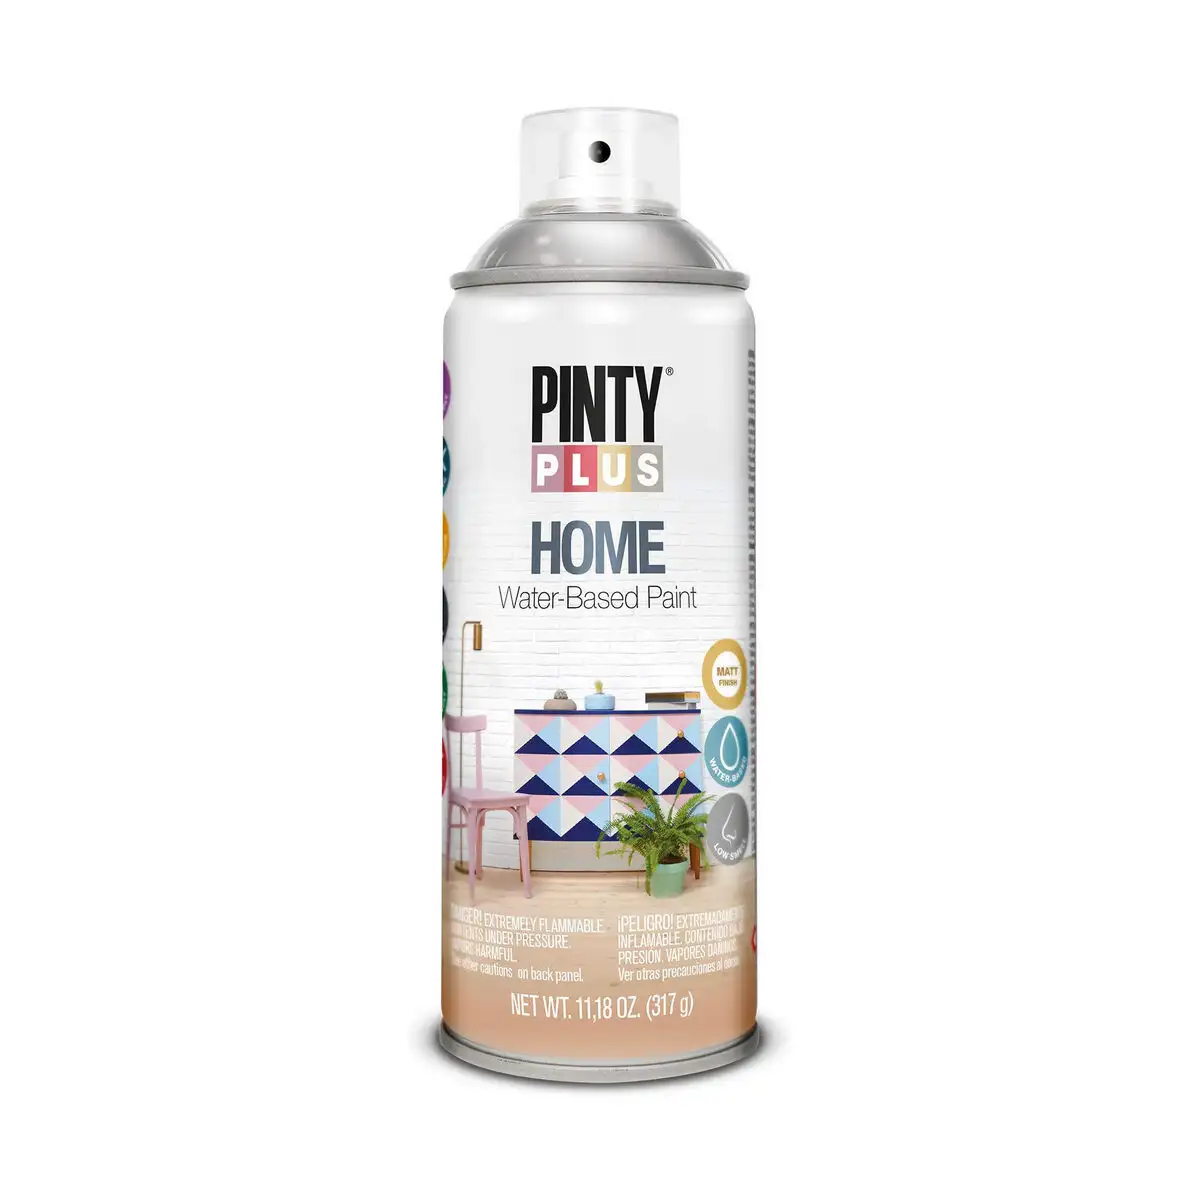 Vernis en spray pintyplus home hm441 400 ml incolore_3353. DIAYTAR SENEGAL - L'Art de Trouver ce que Vous Aimez. Plongez dans notre assortiment varié et choisissez parmi des produits qui reflètent votre style et répondent à vos besoins.